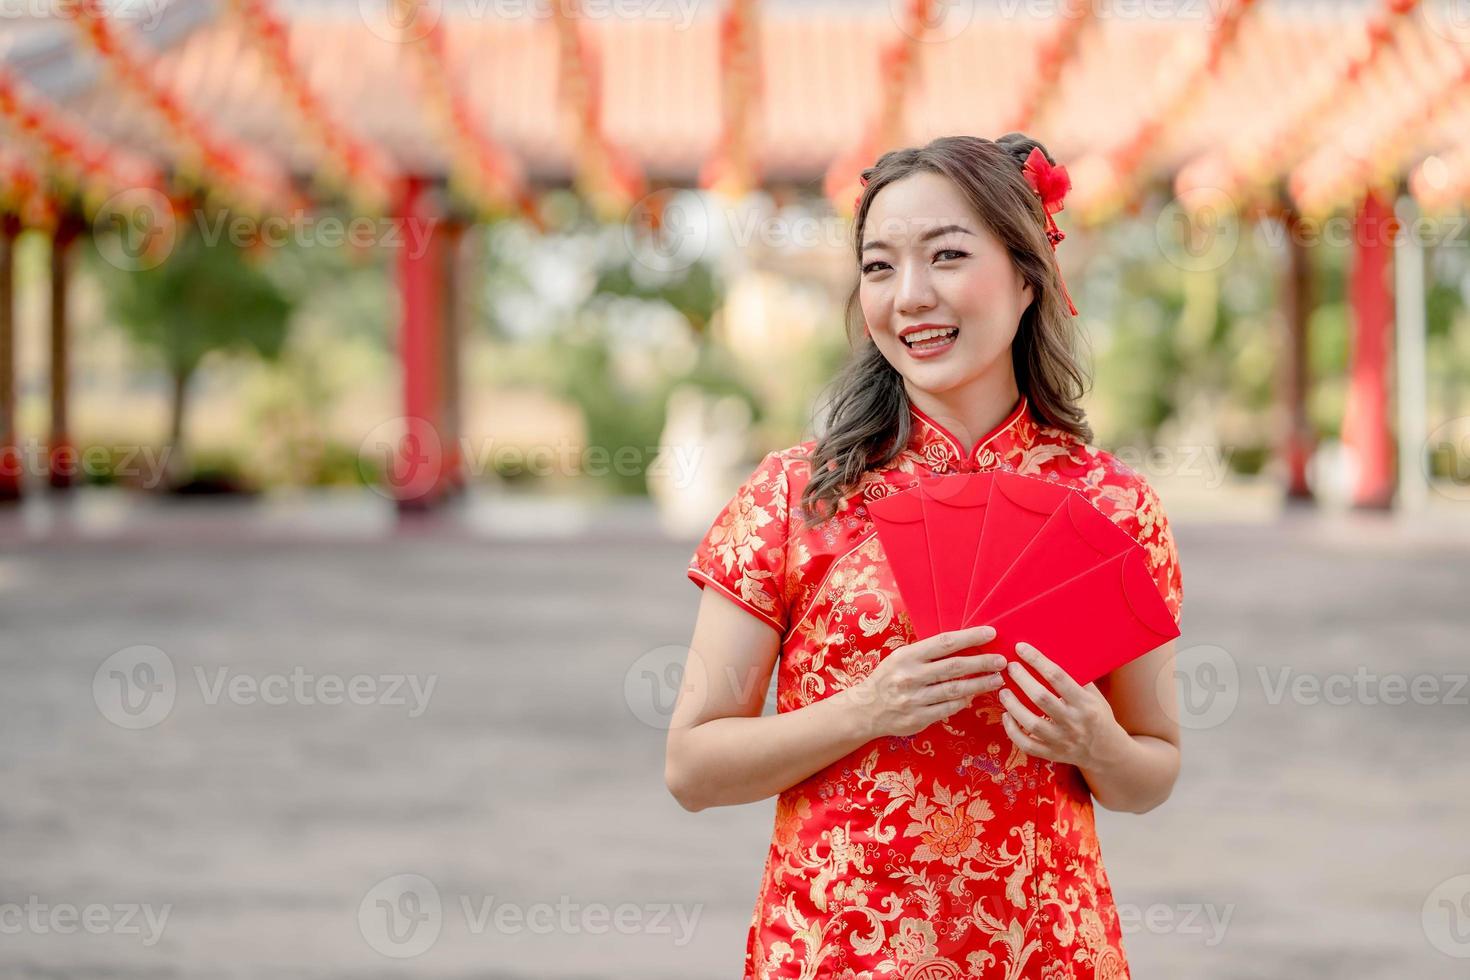 jovem mulher asiática sorrindo alegremente segurando ang pao, envelopes vermelhos vestindo cheongsam parecendo confiante no templo budista chinês. comemore o ano novo lunar chinês, feriado da época festiva foto